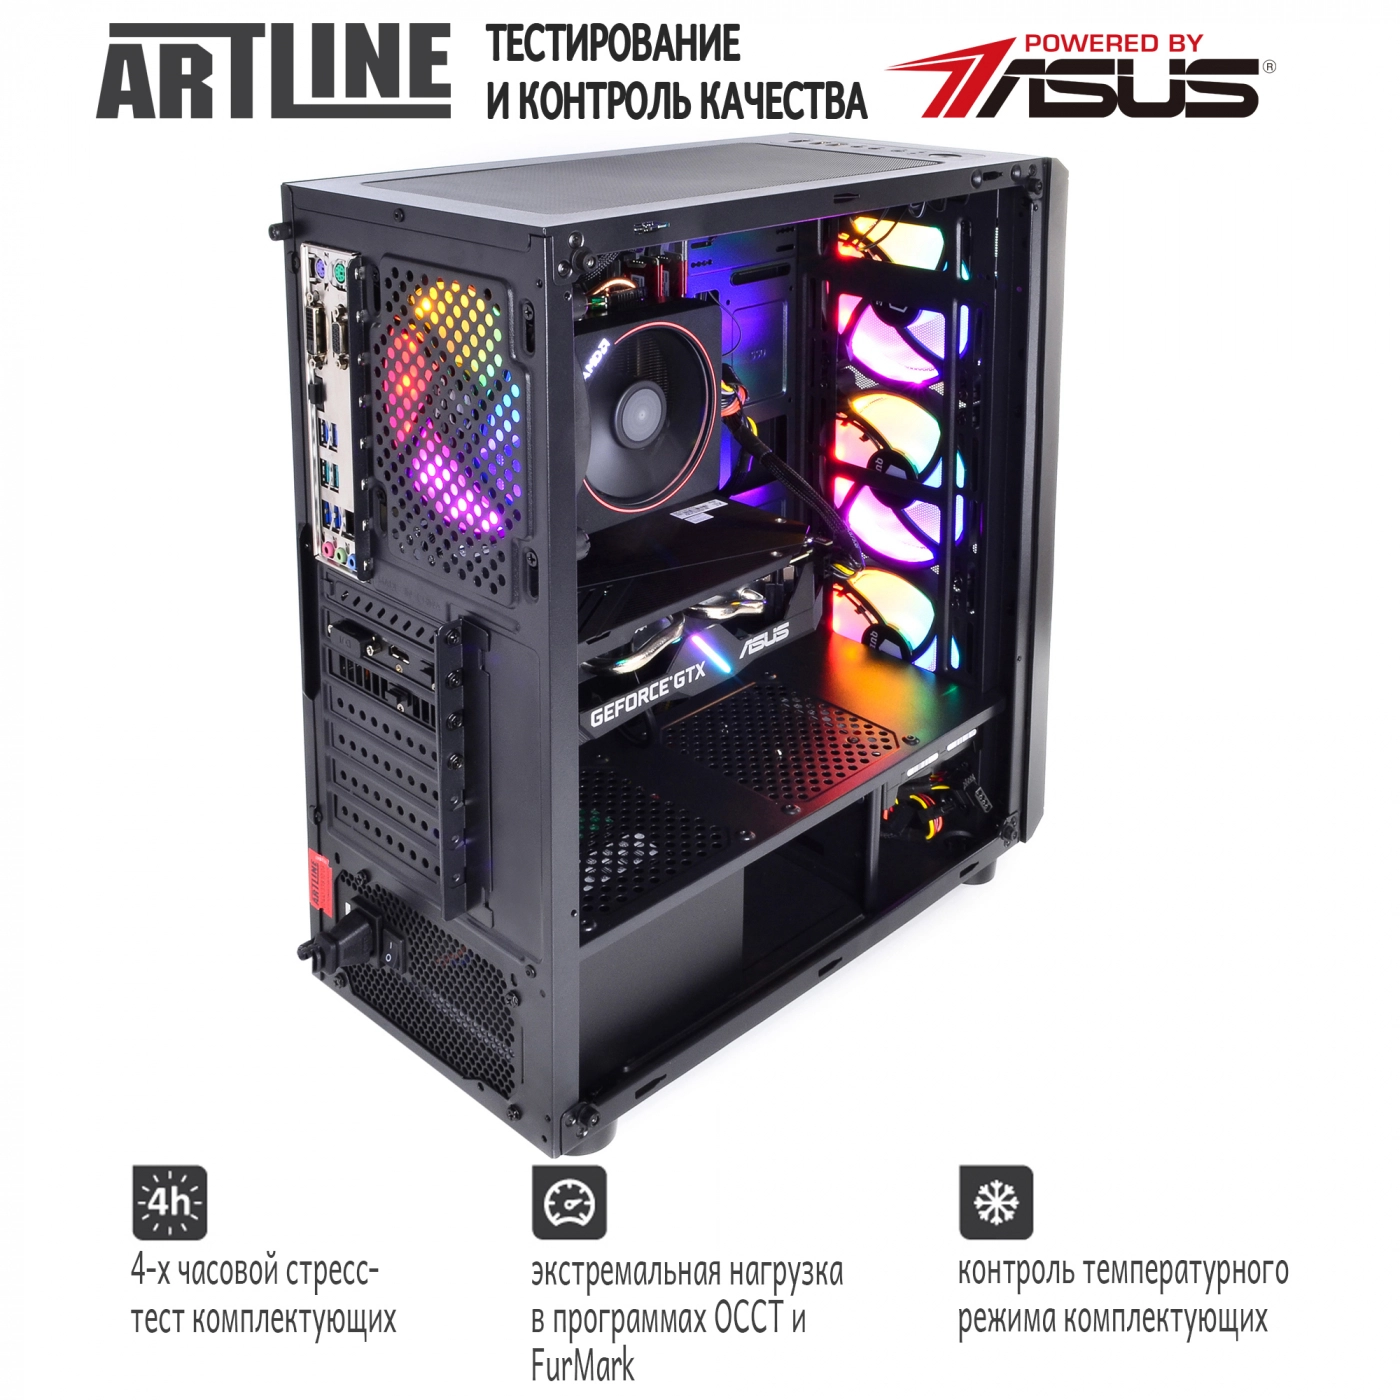 Купить Компьютер ARTLINE Gaming X45v17 - фото 8